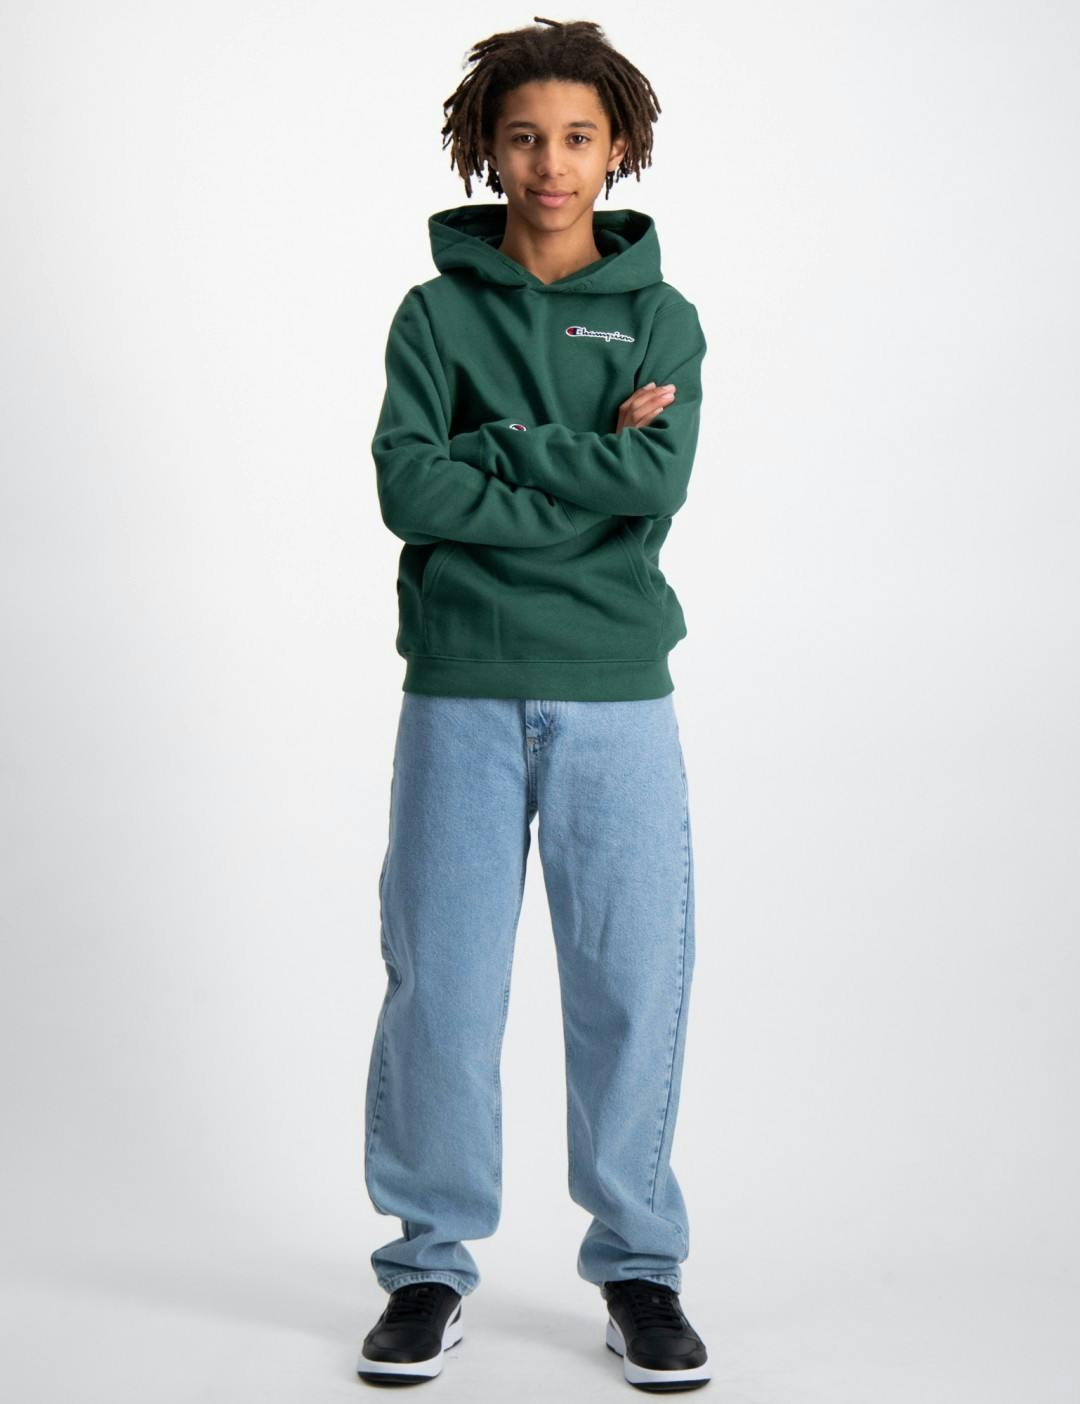 Grün Hooded Brand Jungen Store | Sweatshirt für Kids